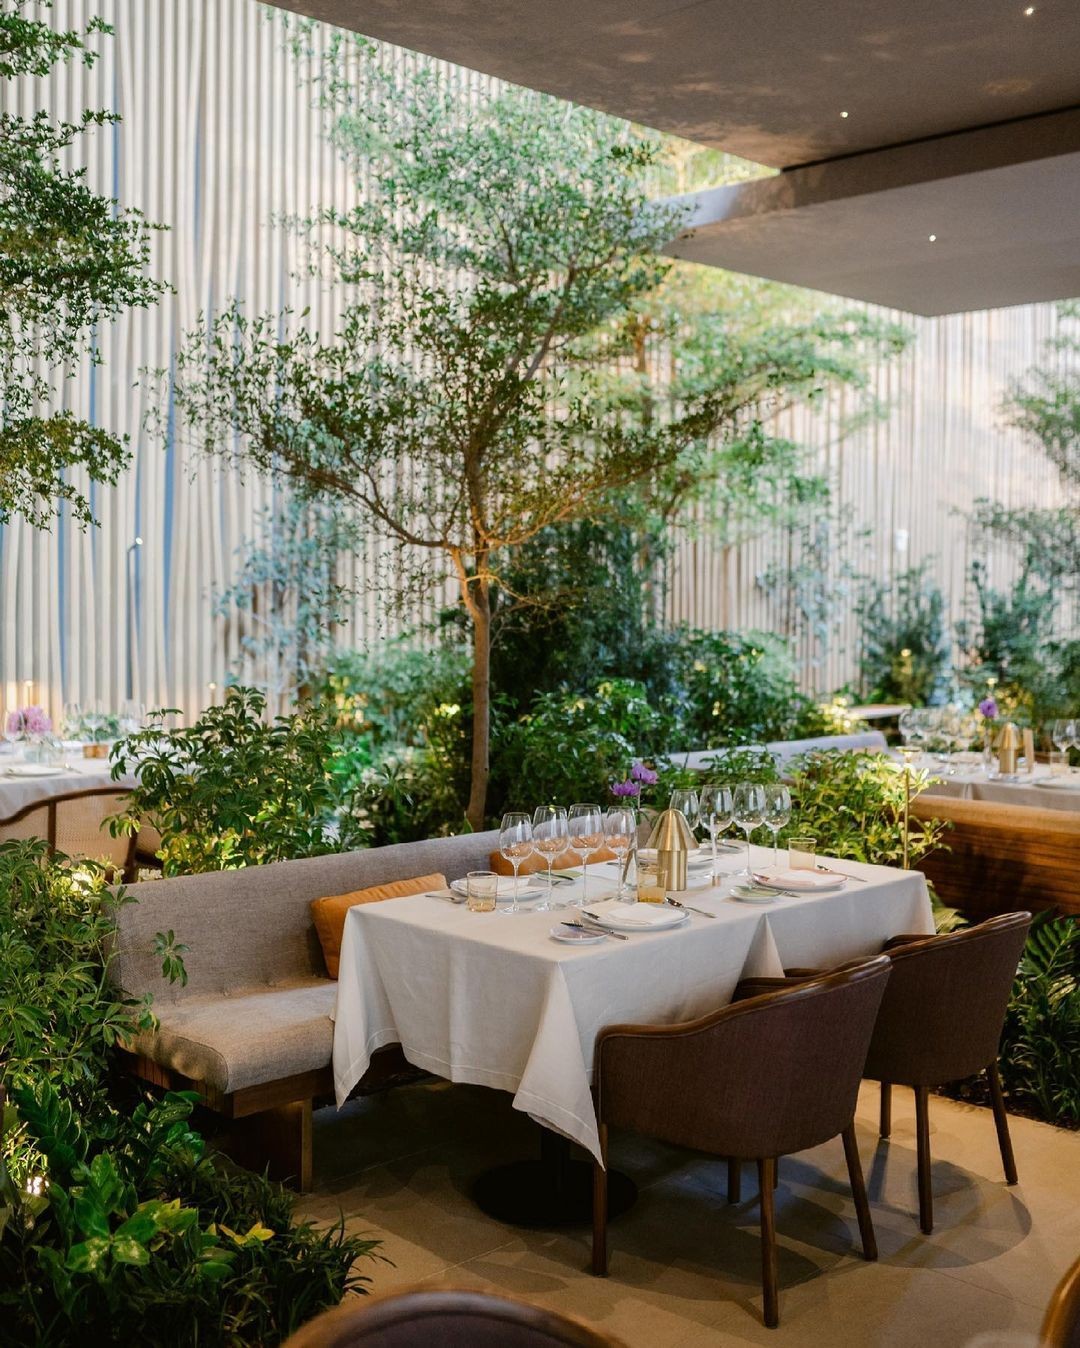 Isay Weinfeld inaugura restaurante com paisagismo marcante, em Nova York (Foto: Reprodução/ Instagram)